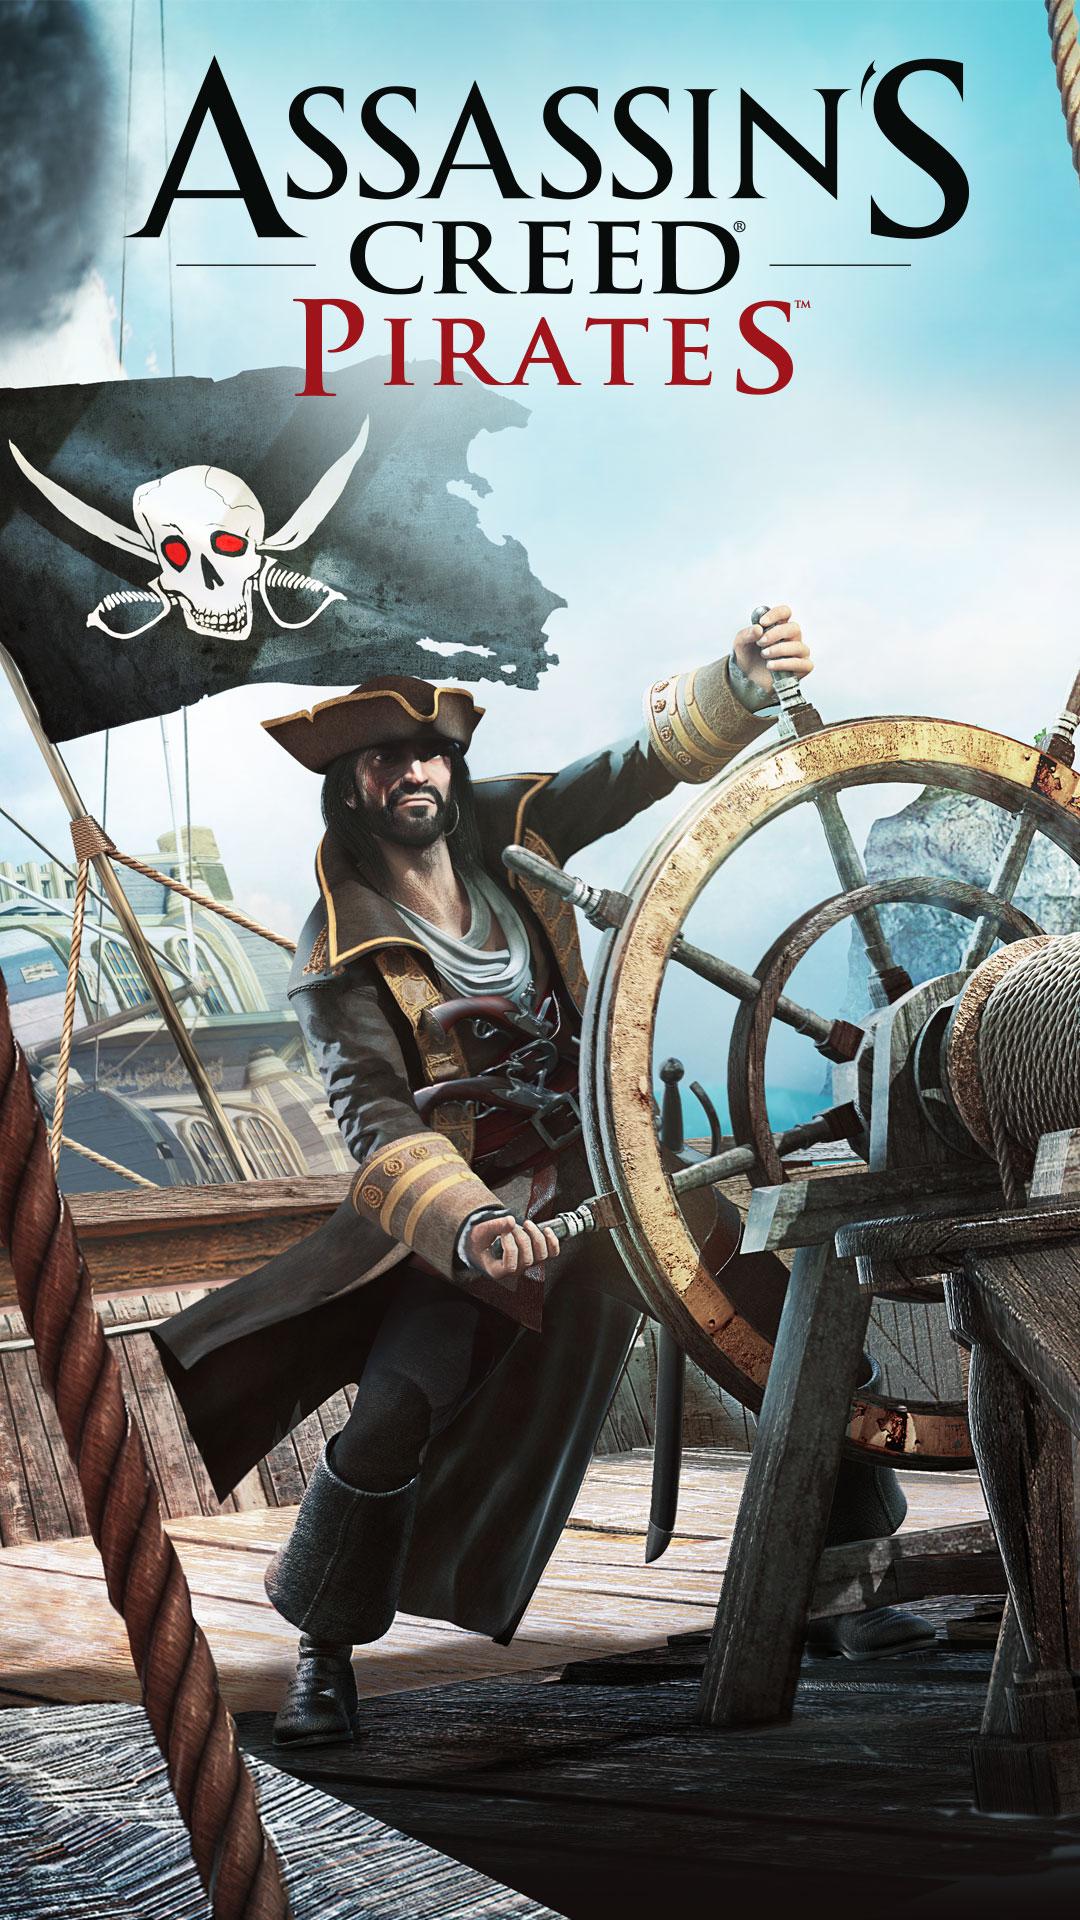 The Pirate – Filmes no Google Play